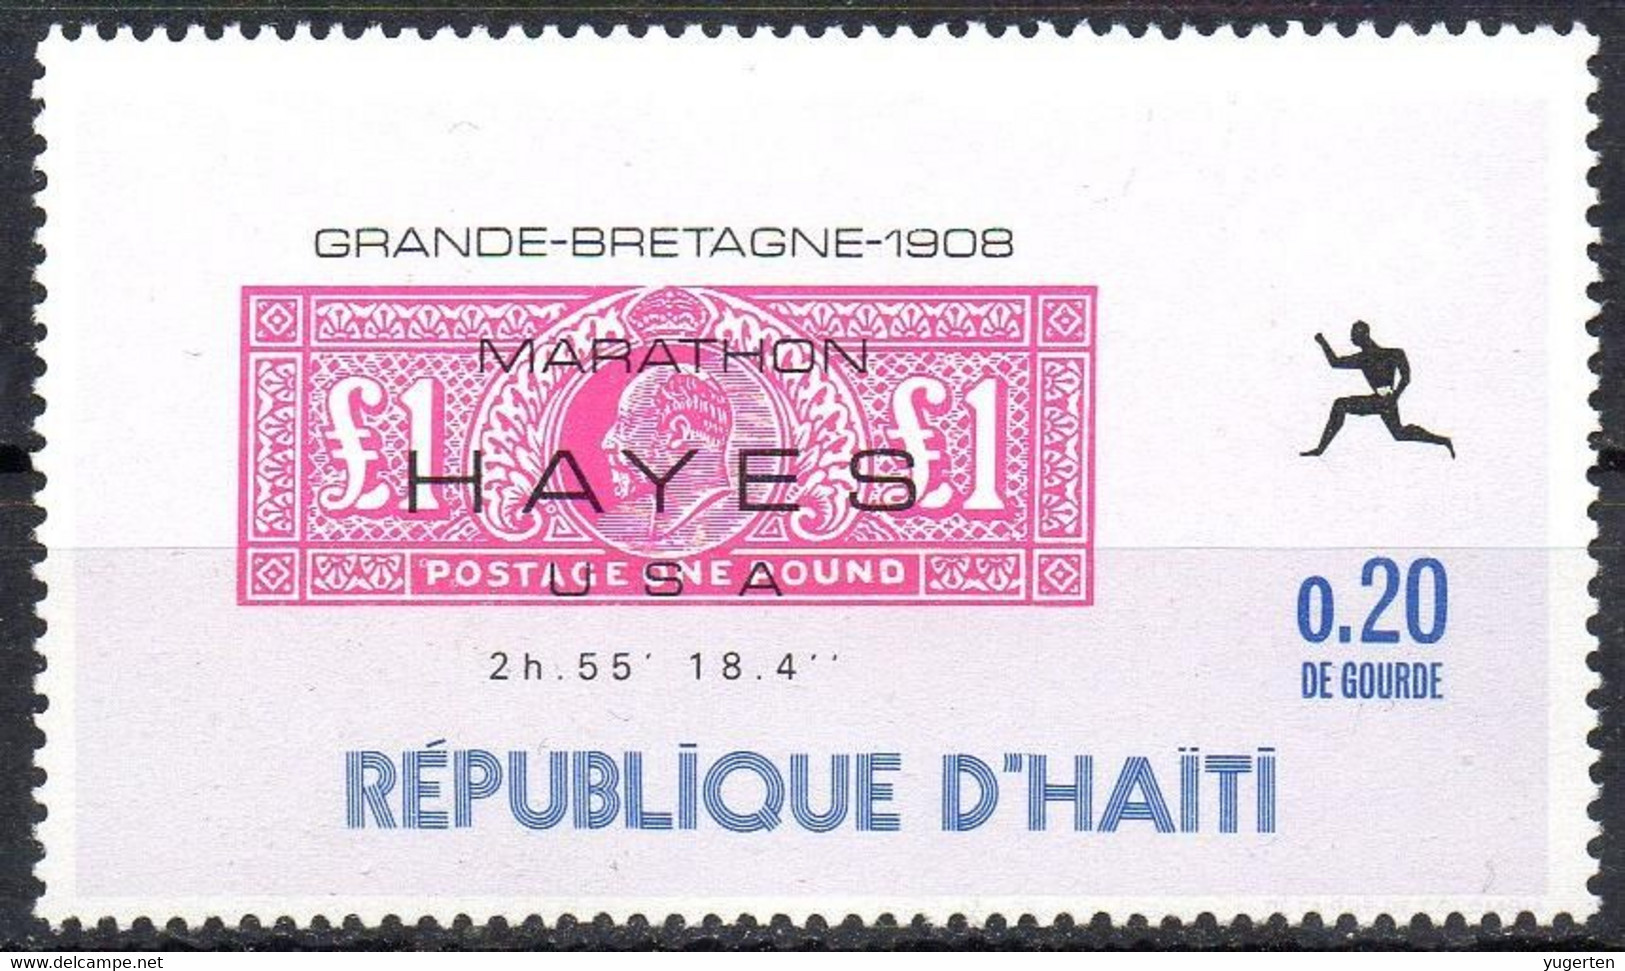 HAITI - 1969 - 1v - MNH** - Olympic Marathon Winners - Hayes - USA - Great Britain 1908 - Olympics Maratón Maratona - Estate 1908: Londra